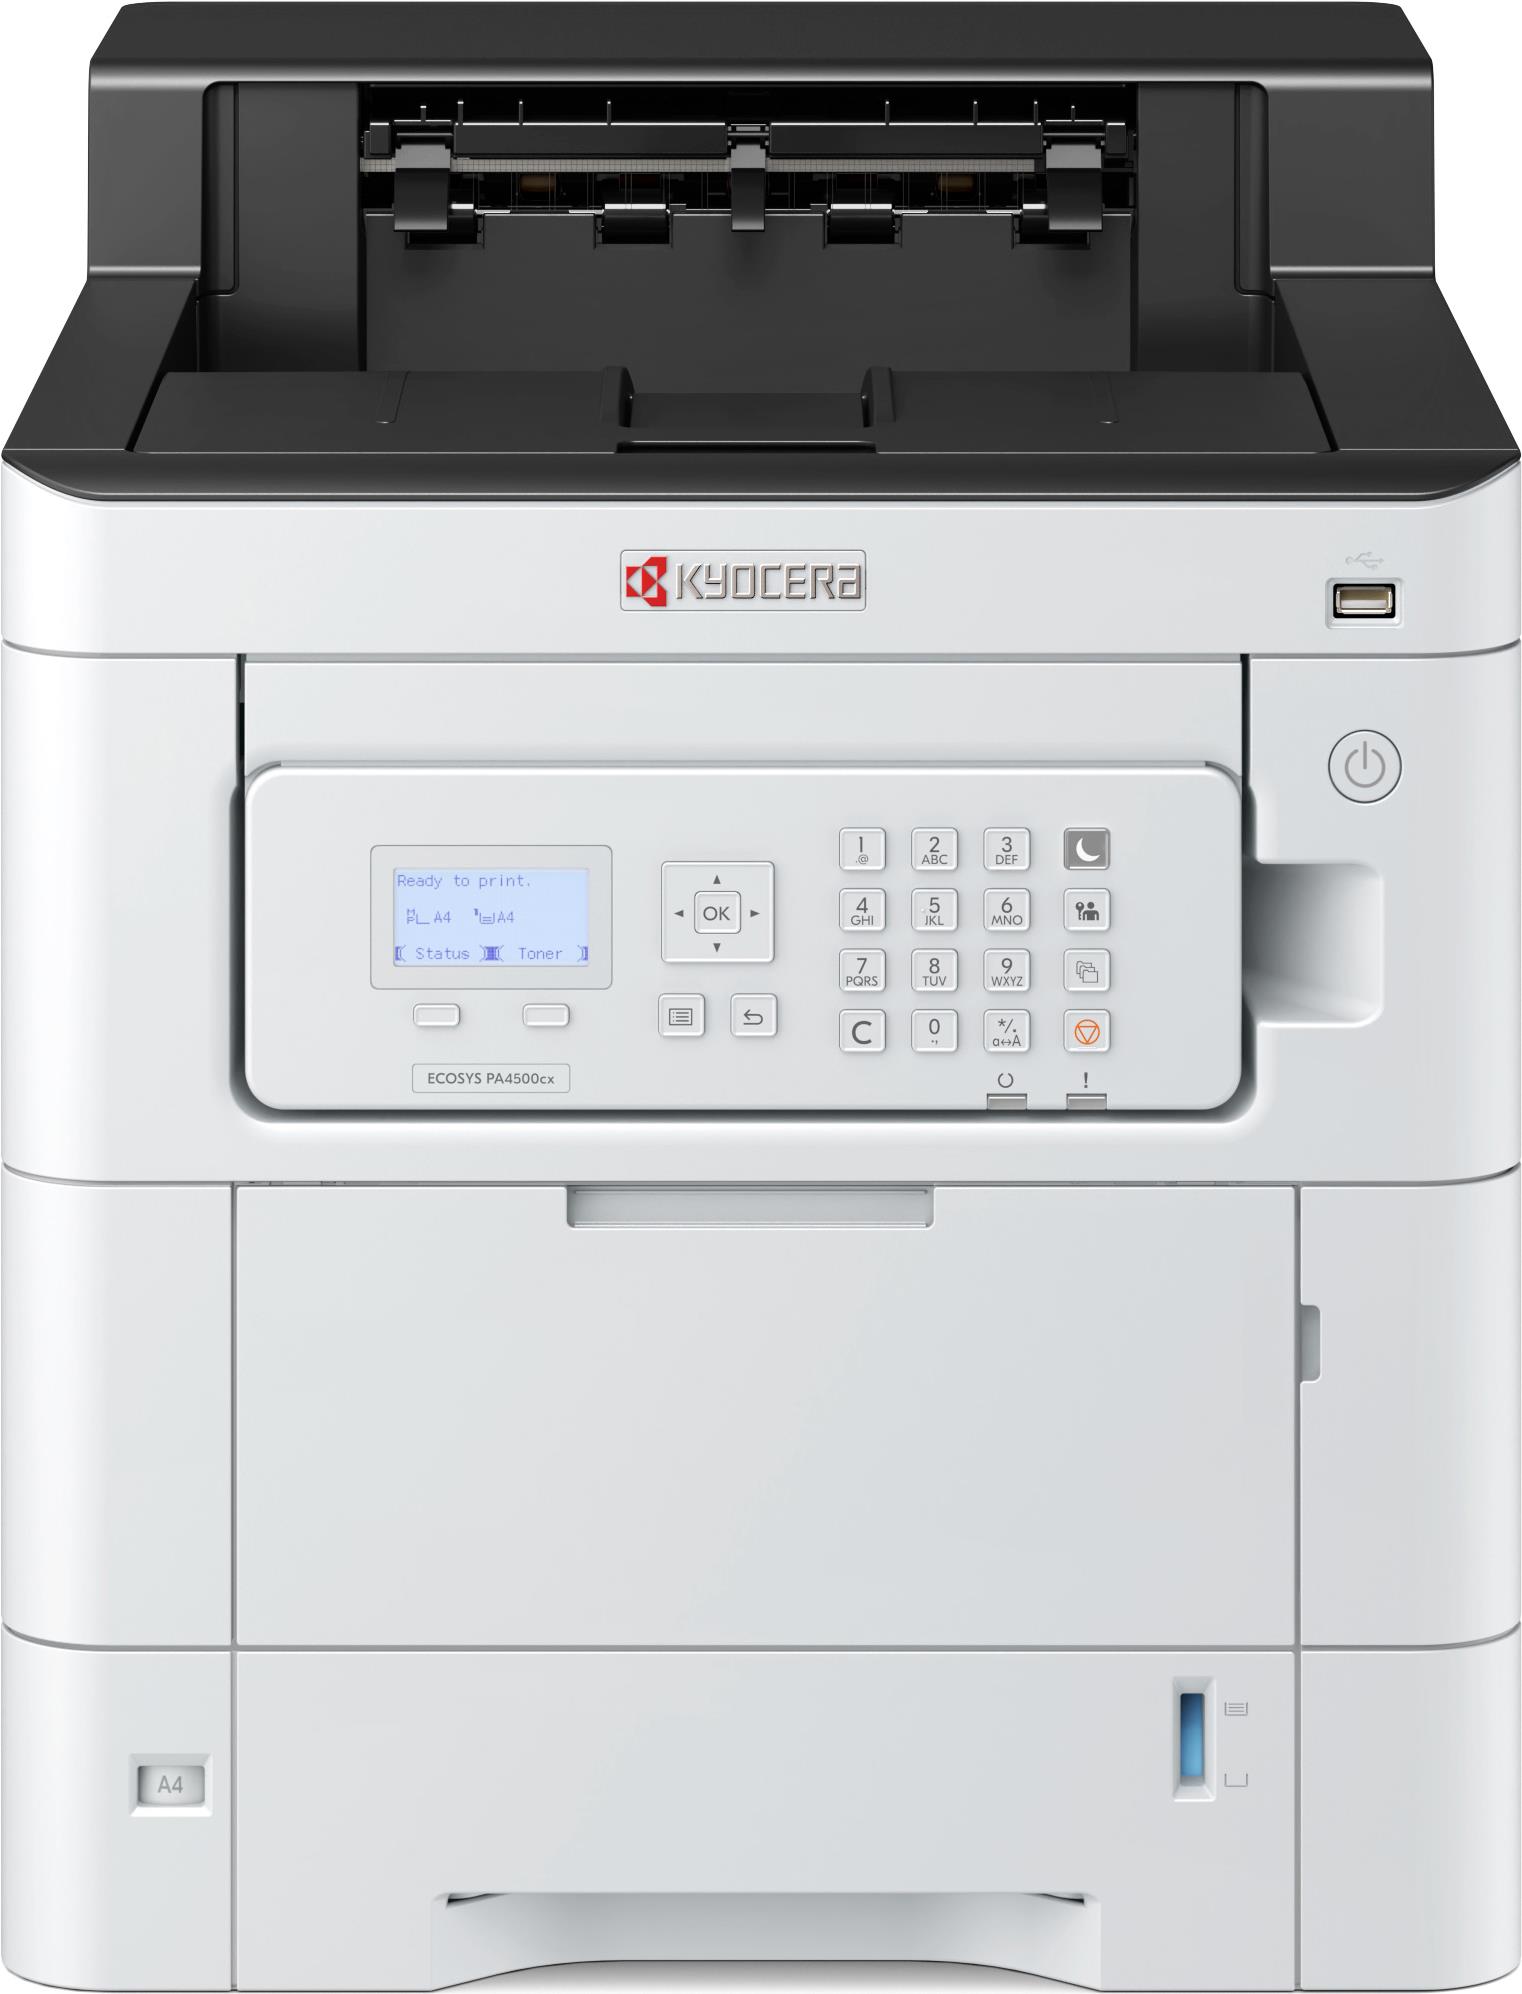 KYOCERA ECOSYS PA4500cx Printer A4 F�rg 45ppm Farbe 1200 x 1200 DPI (1102Z13NL0) von Kyocera